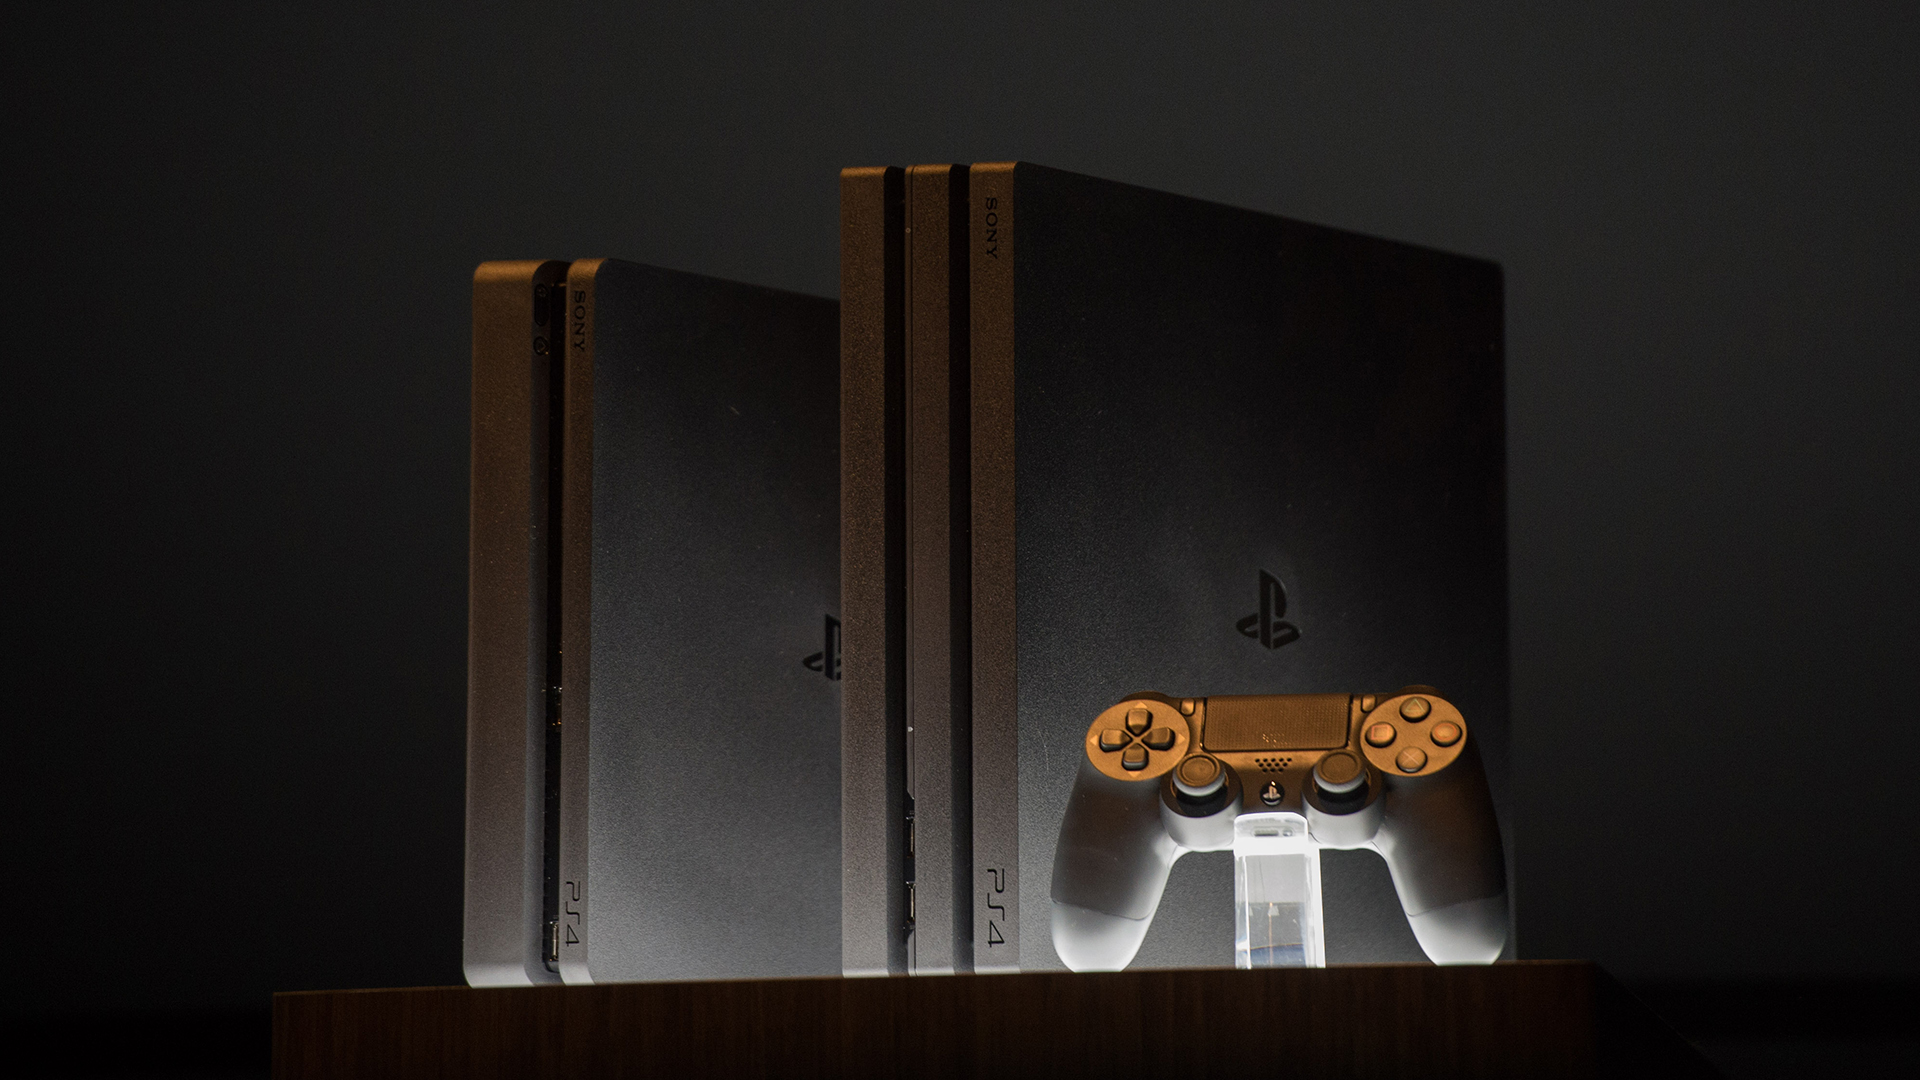 Sony confirma preço e data de lançamento do PS4 Pro no Brasil: 19